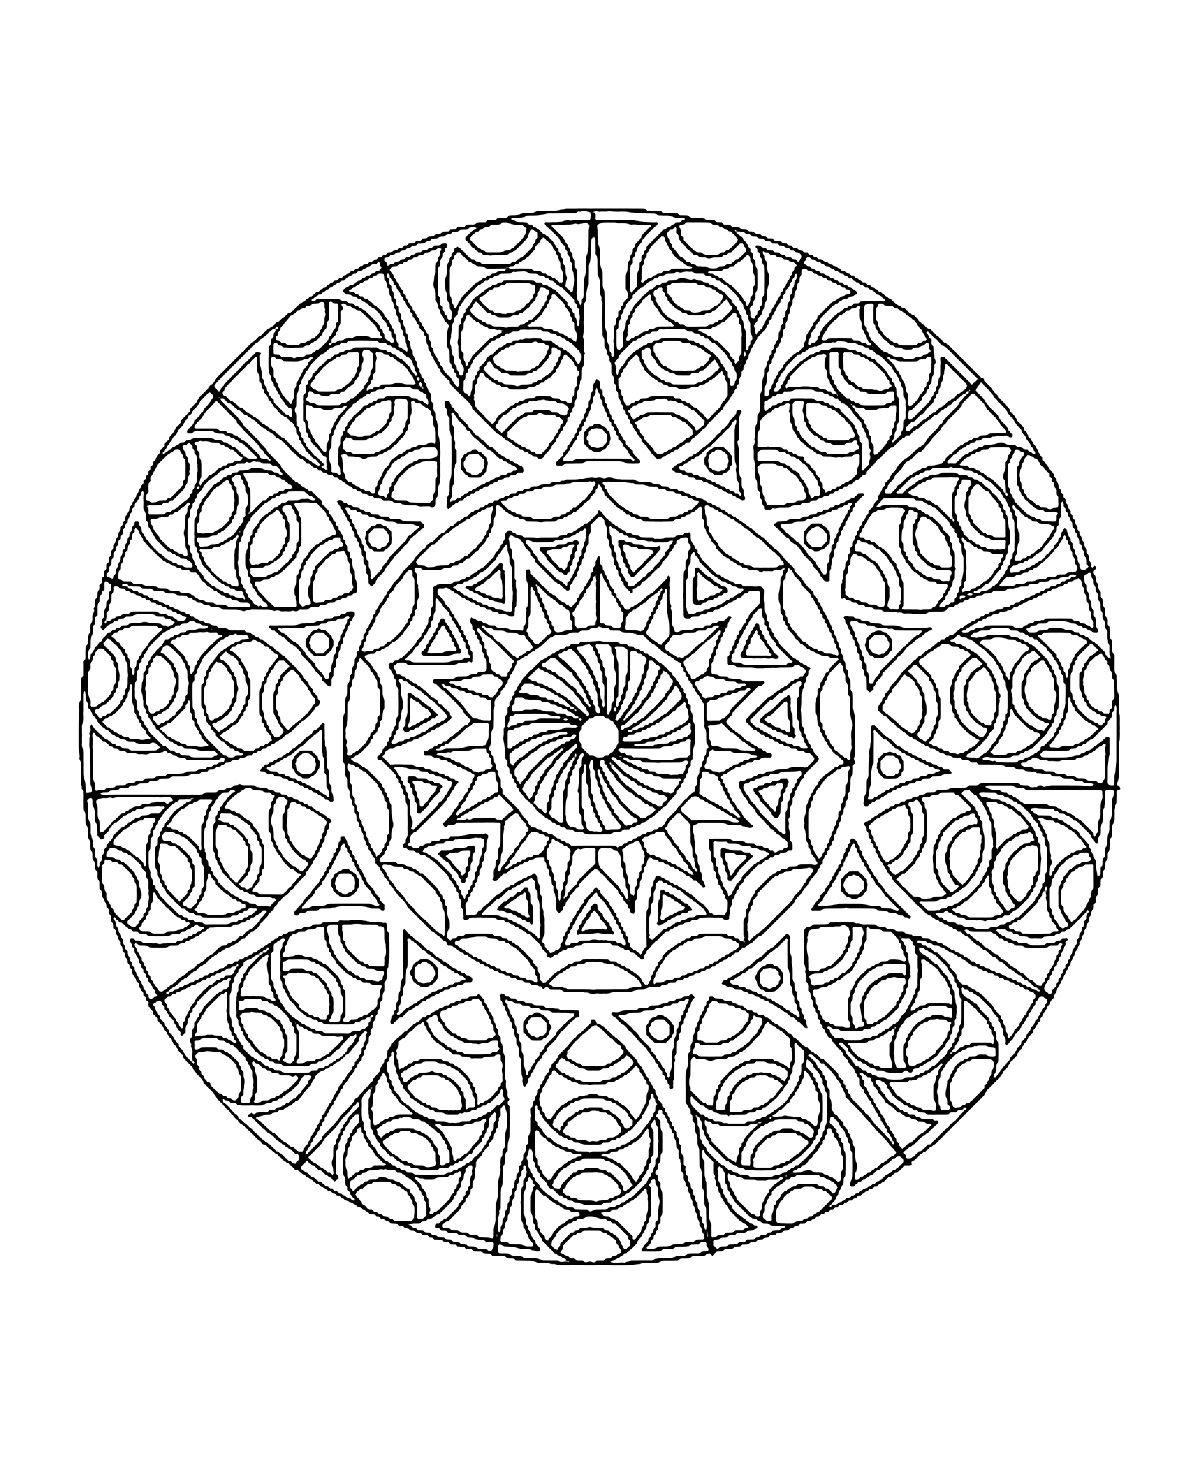 Ausmalbild eines Mandalas mit mehreren verschiedenen Kreisbögen sowie einer sehr schönen Blume in der Mitte des Mandalas. Schwierig auszumalen.